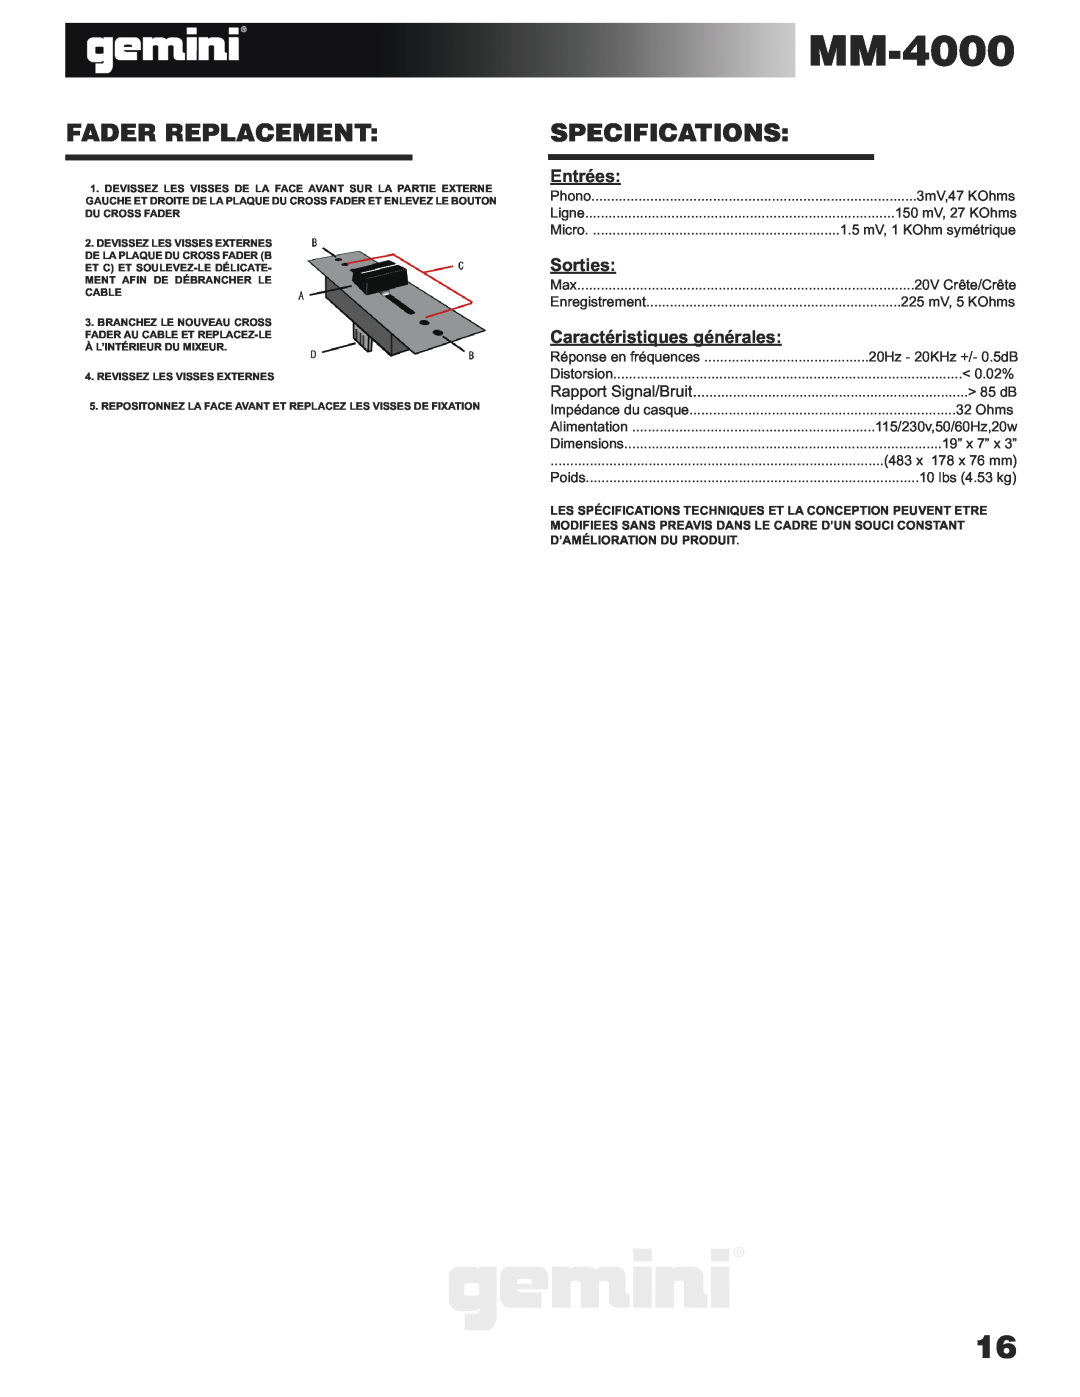 Gemini MM-4000 manual Entrées, Sorties, Caractéristiques générales, Fader Replacement, Specifications 